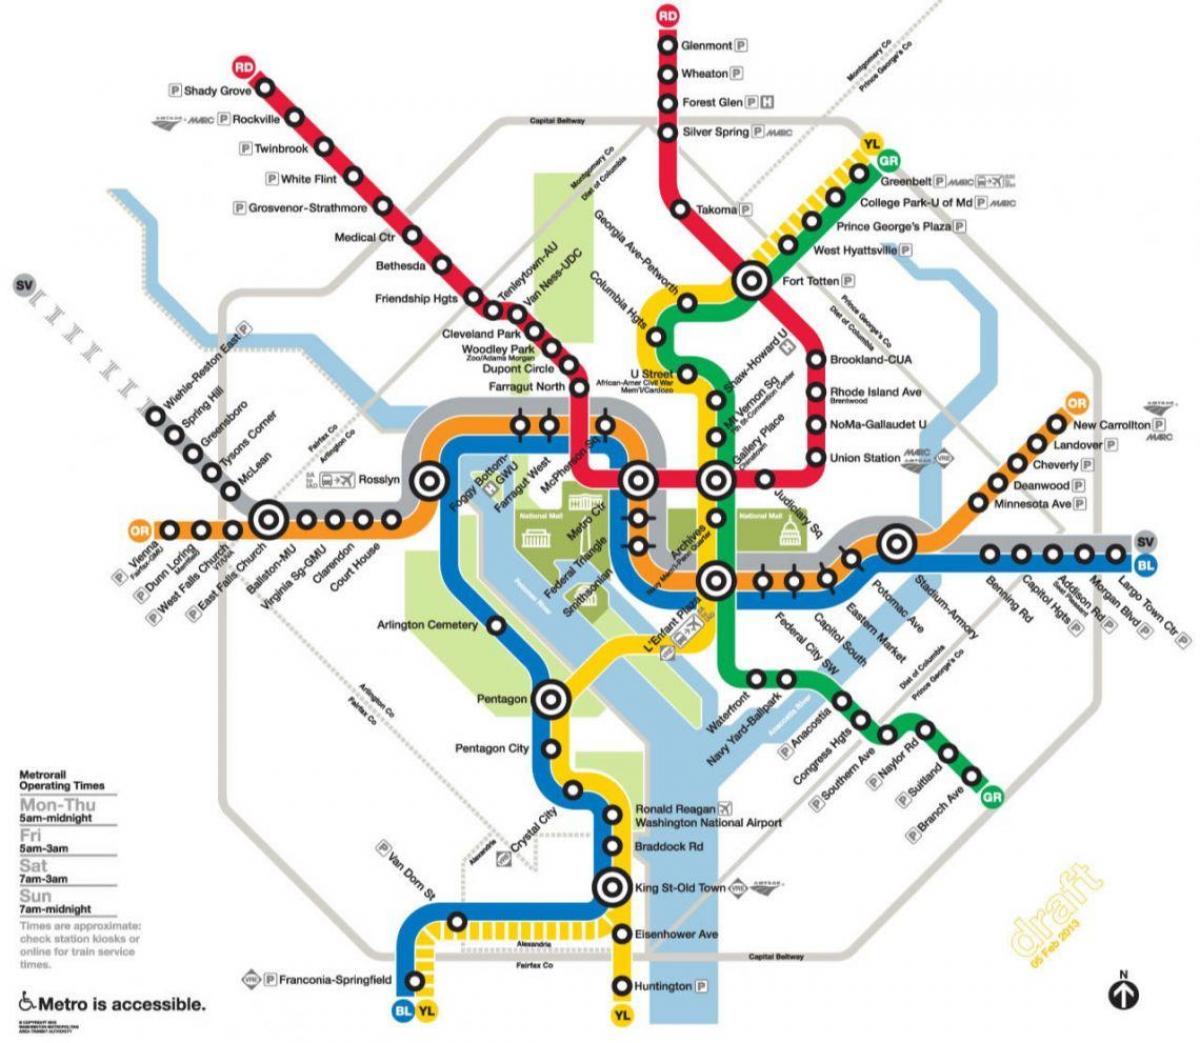 вашингтон дс метро, төмөр замын газрын зураг нь